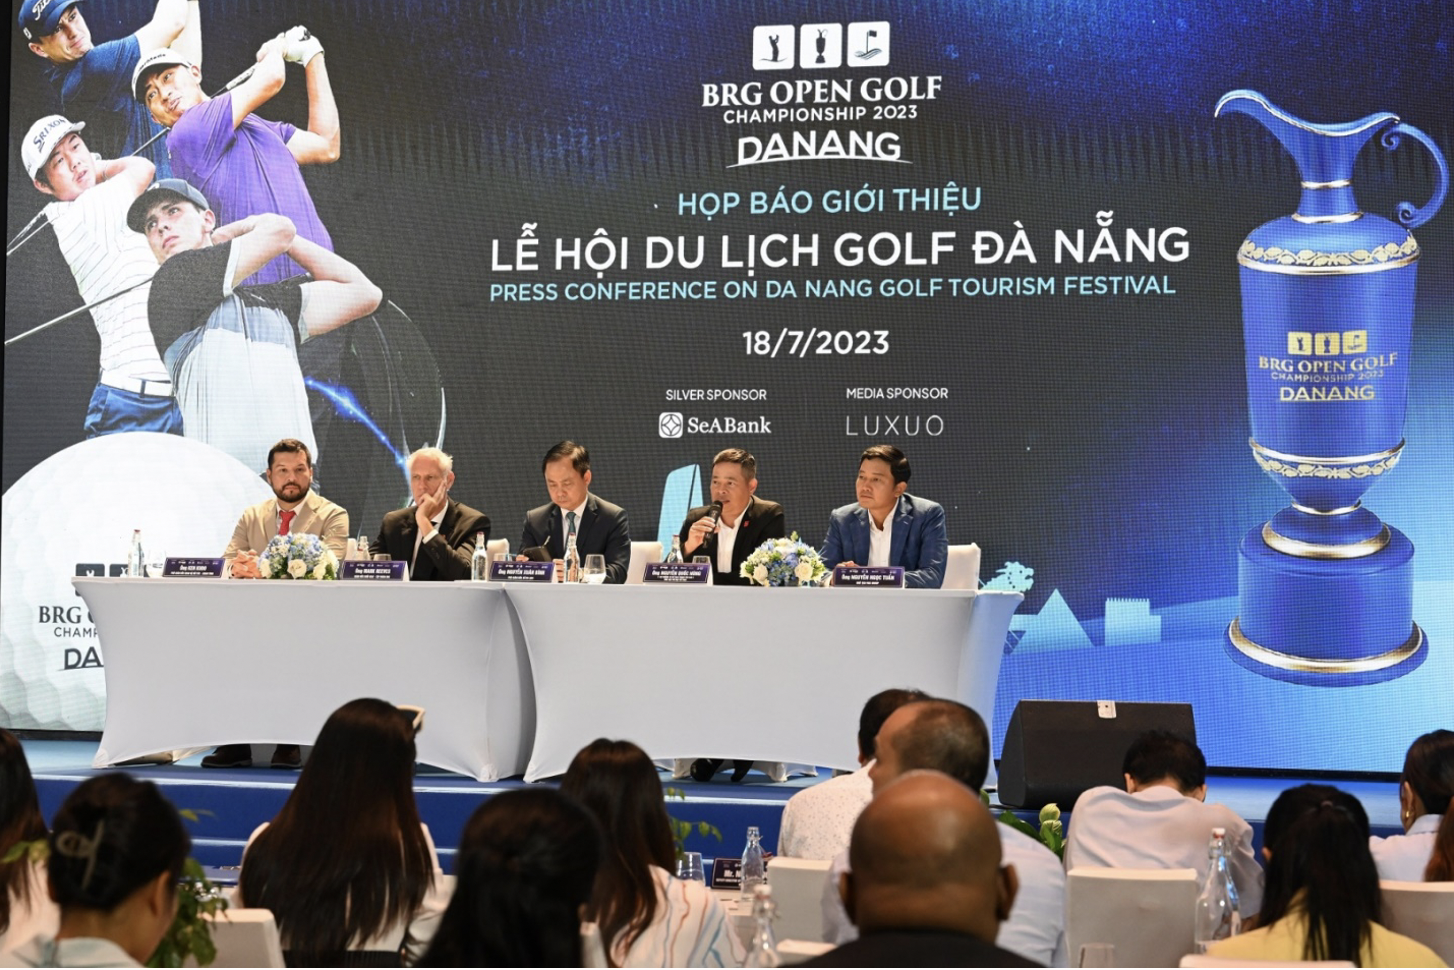 Lễ hội du lịch Golf Đà Nẵng 2023 và giải BRG open Golf Championship DANANG 2023